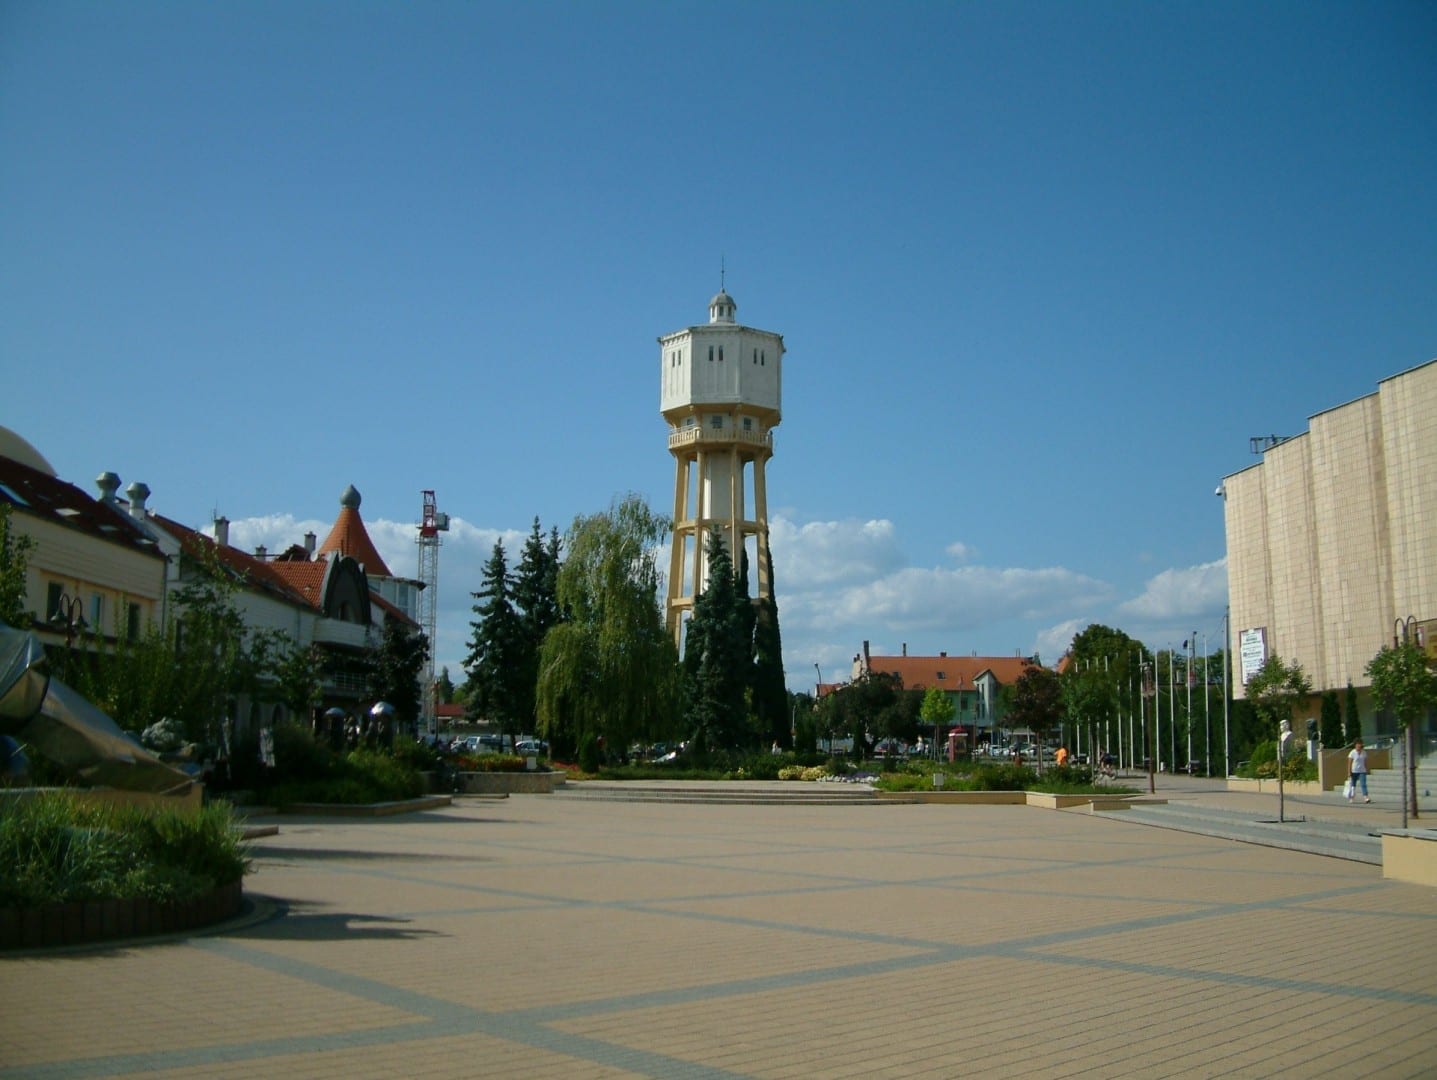 Fő tér (Plaza Principal) con la Torre del Agua Siófok Hungría